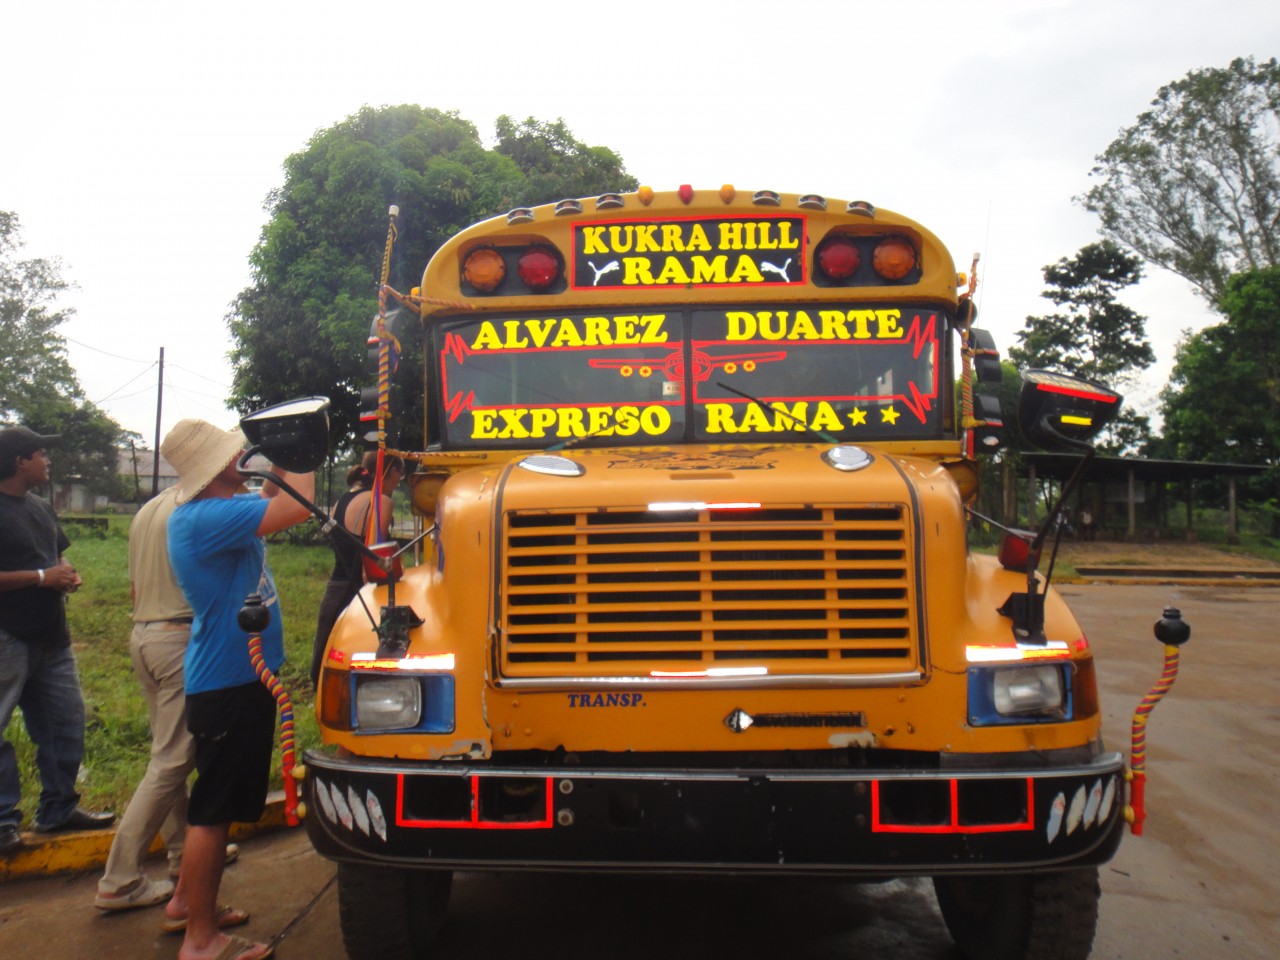 vyřazené autobusy amerických škol fungují jako místní linkové autobusy